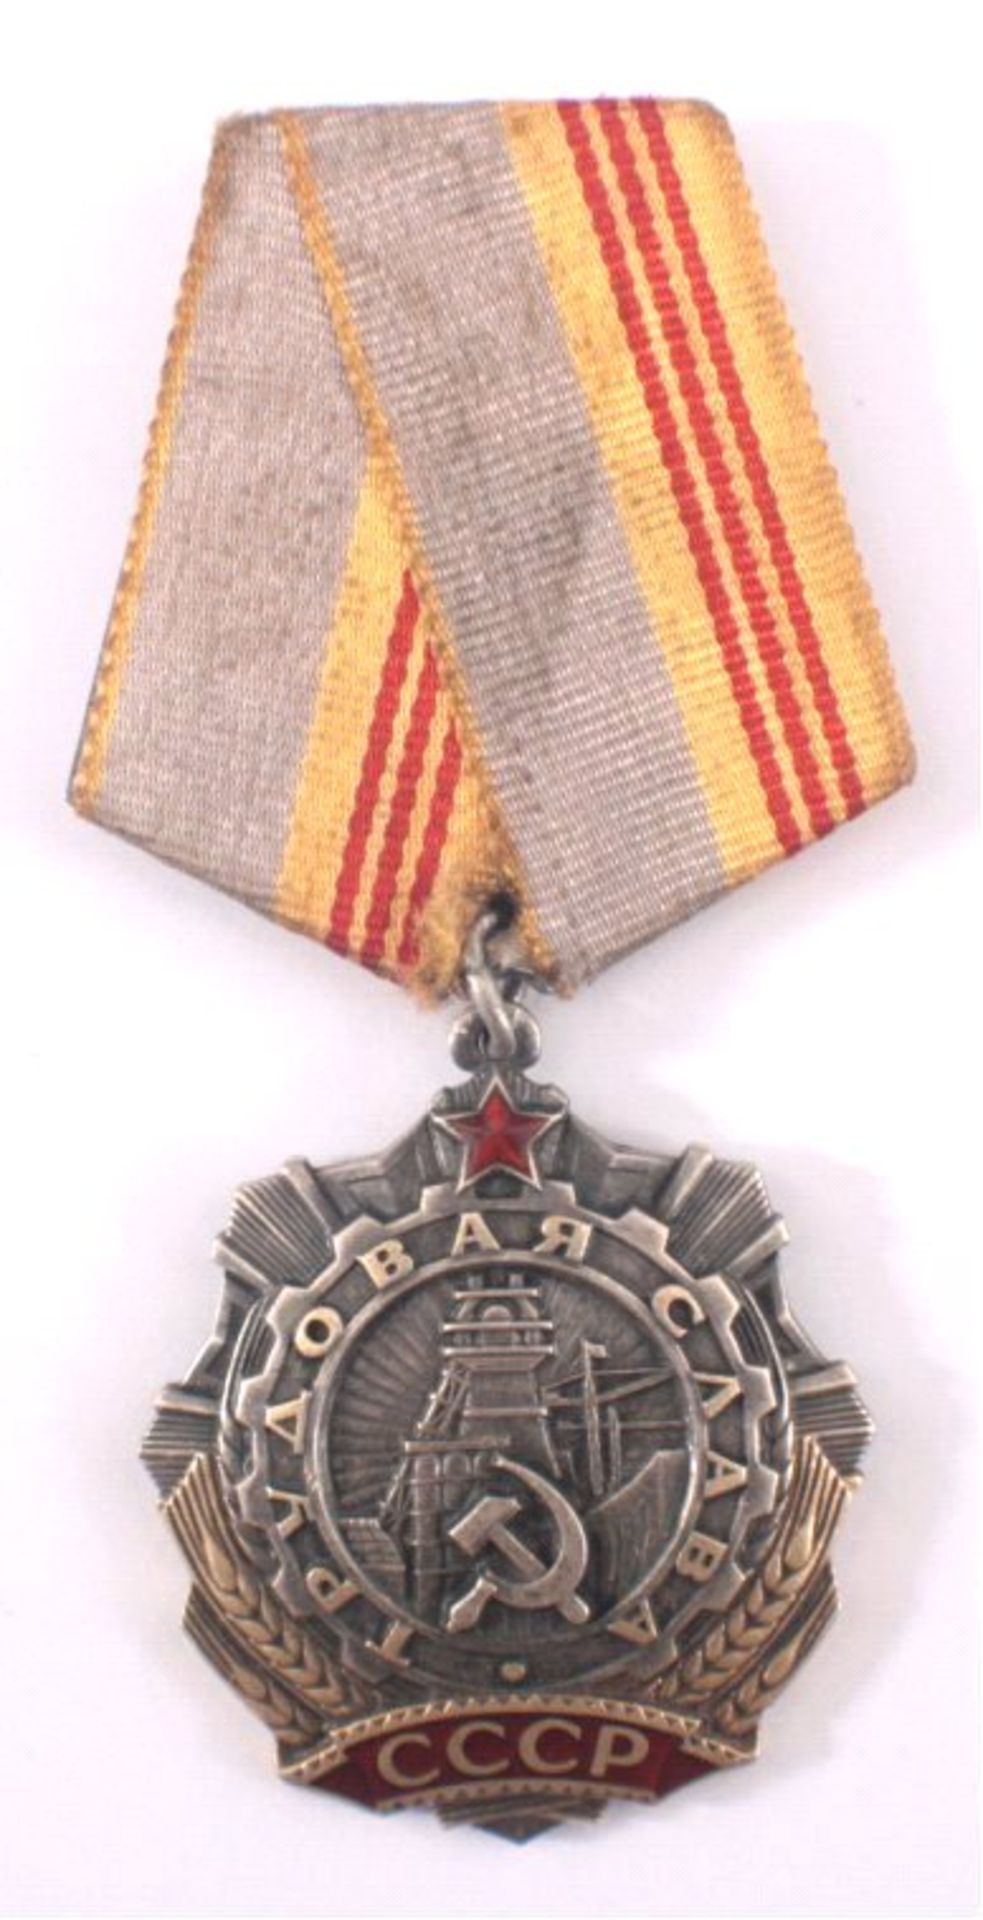 Russland, Orden des Arbeitsruhms 3. Kl. Nr. 1915/24Sehr gute Erhaltung, Band fleckig."Order of